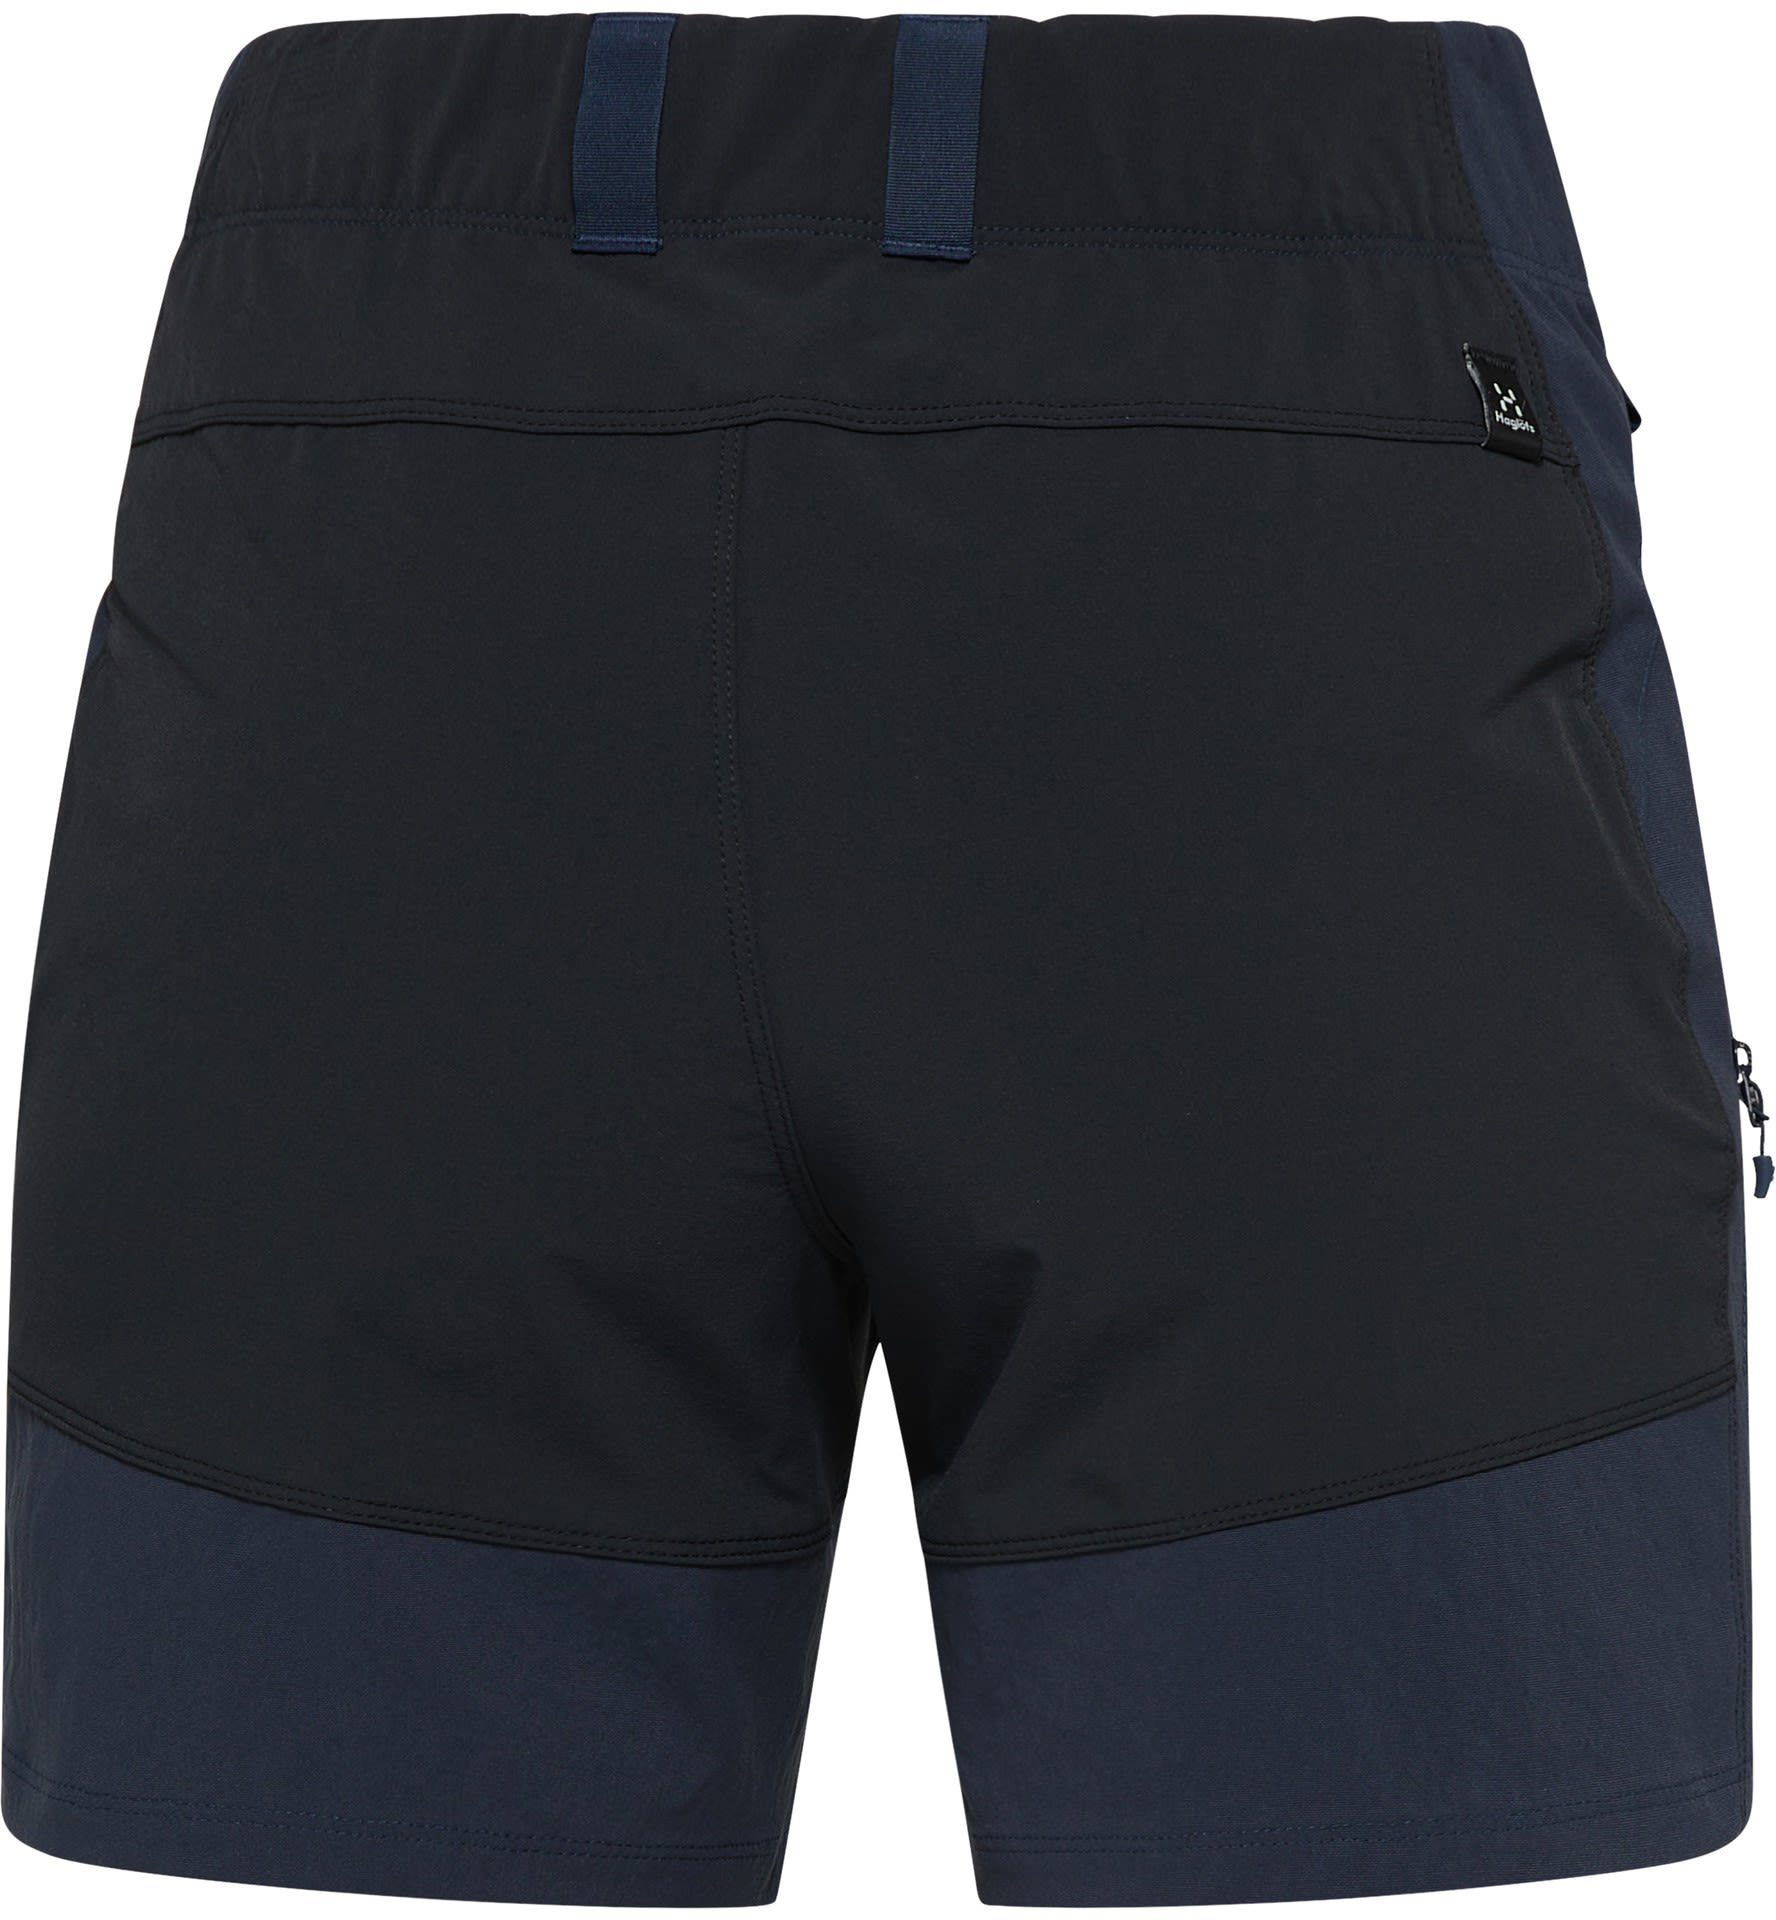 Mid Haglöfs - Strandshorts Damen Haglöfs Shorts Tarn Black Standard Shorts W True Blue